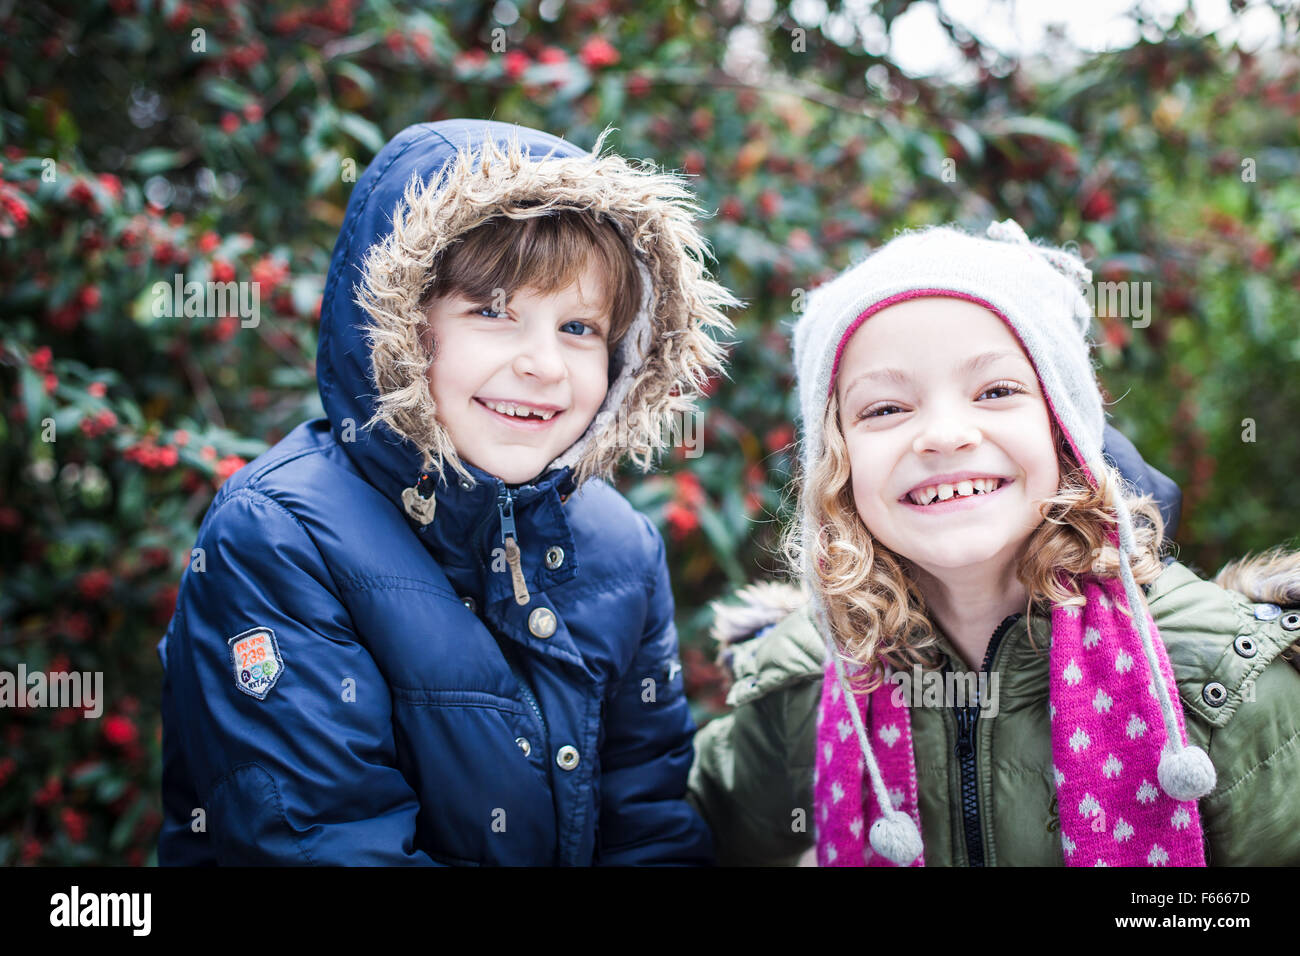 Foto der Kinder oder Kind in Winterkleidung, lächelnd, glücklich, verspielt Stockfoto